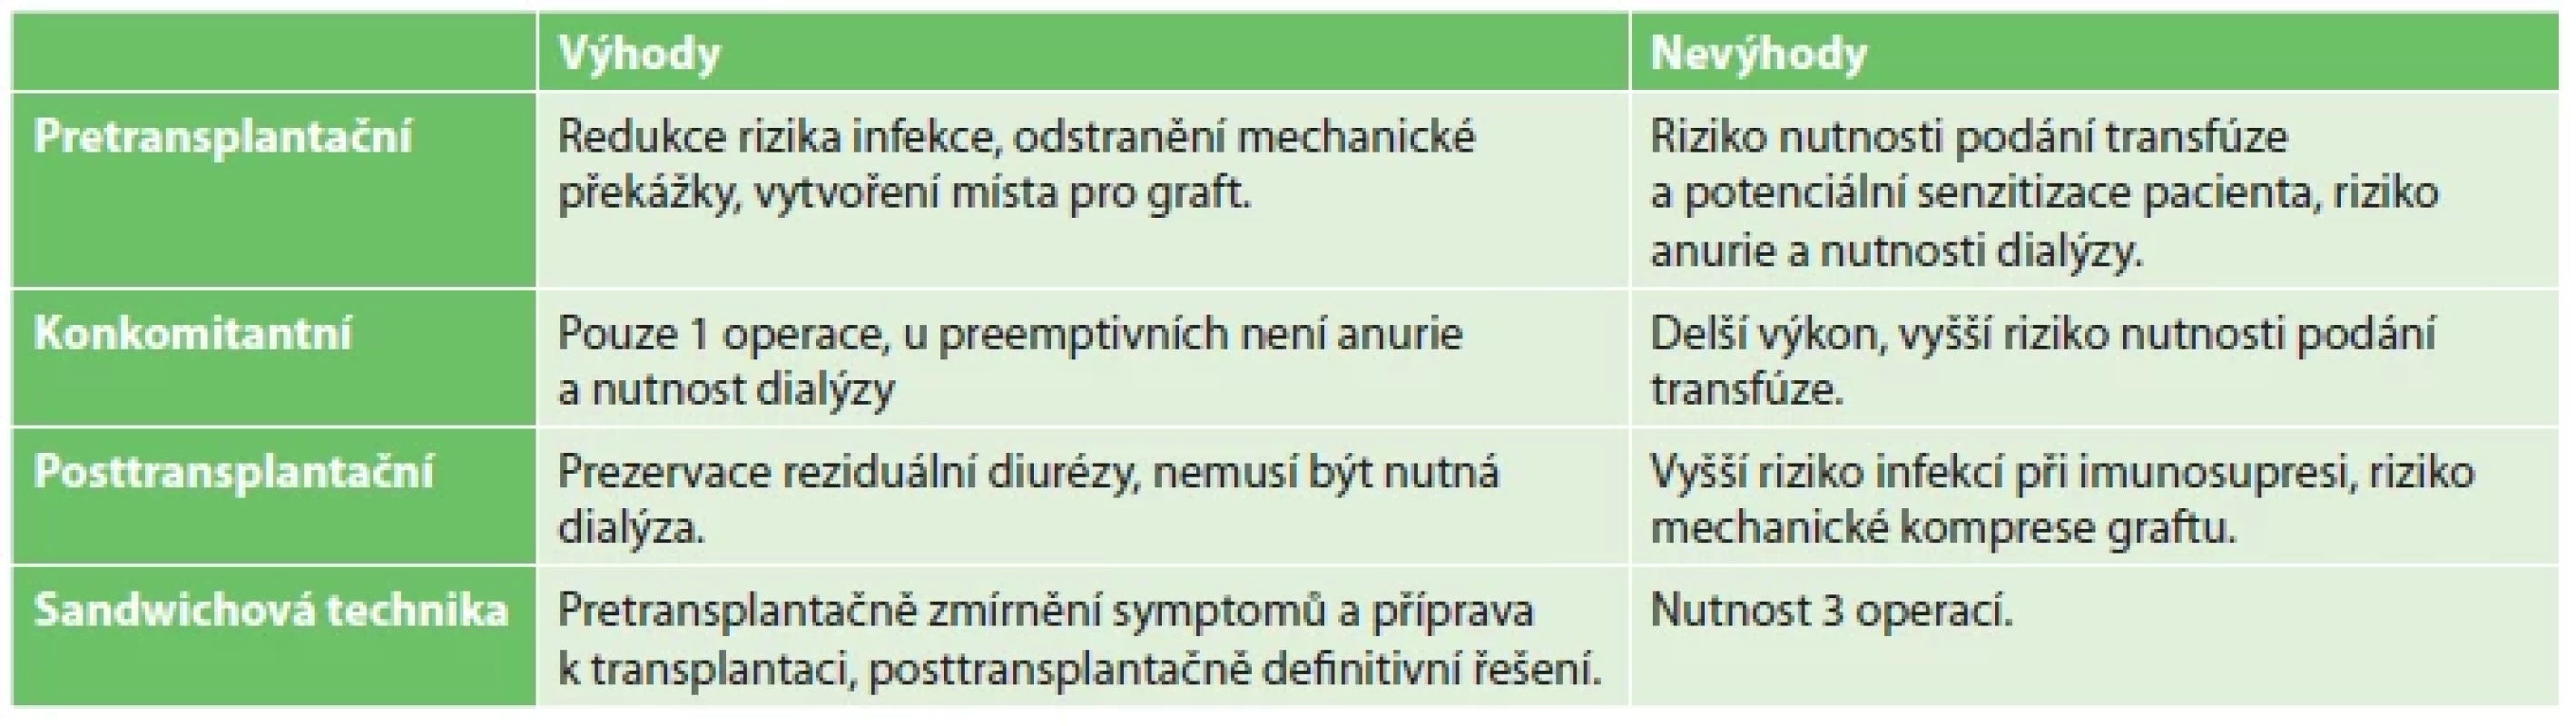 Srovnání různých metod načasování NN <br> 
Tab. 1. Comparison of different timing methods of native nephrectomy